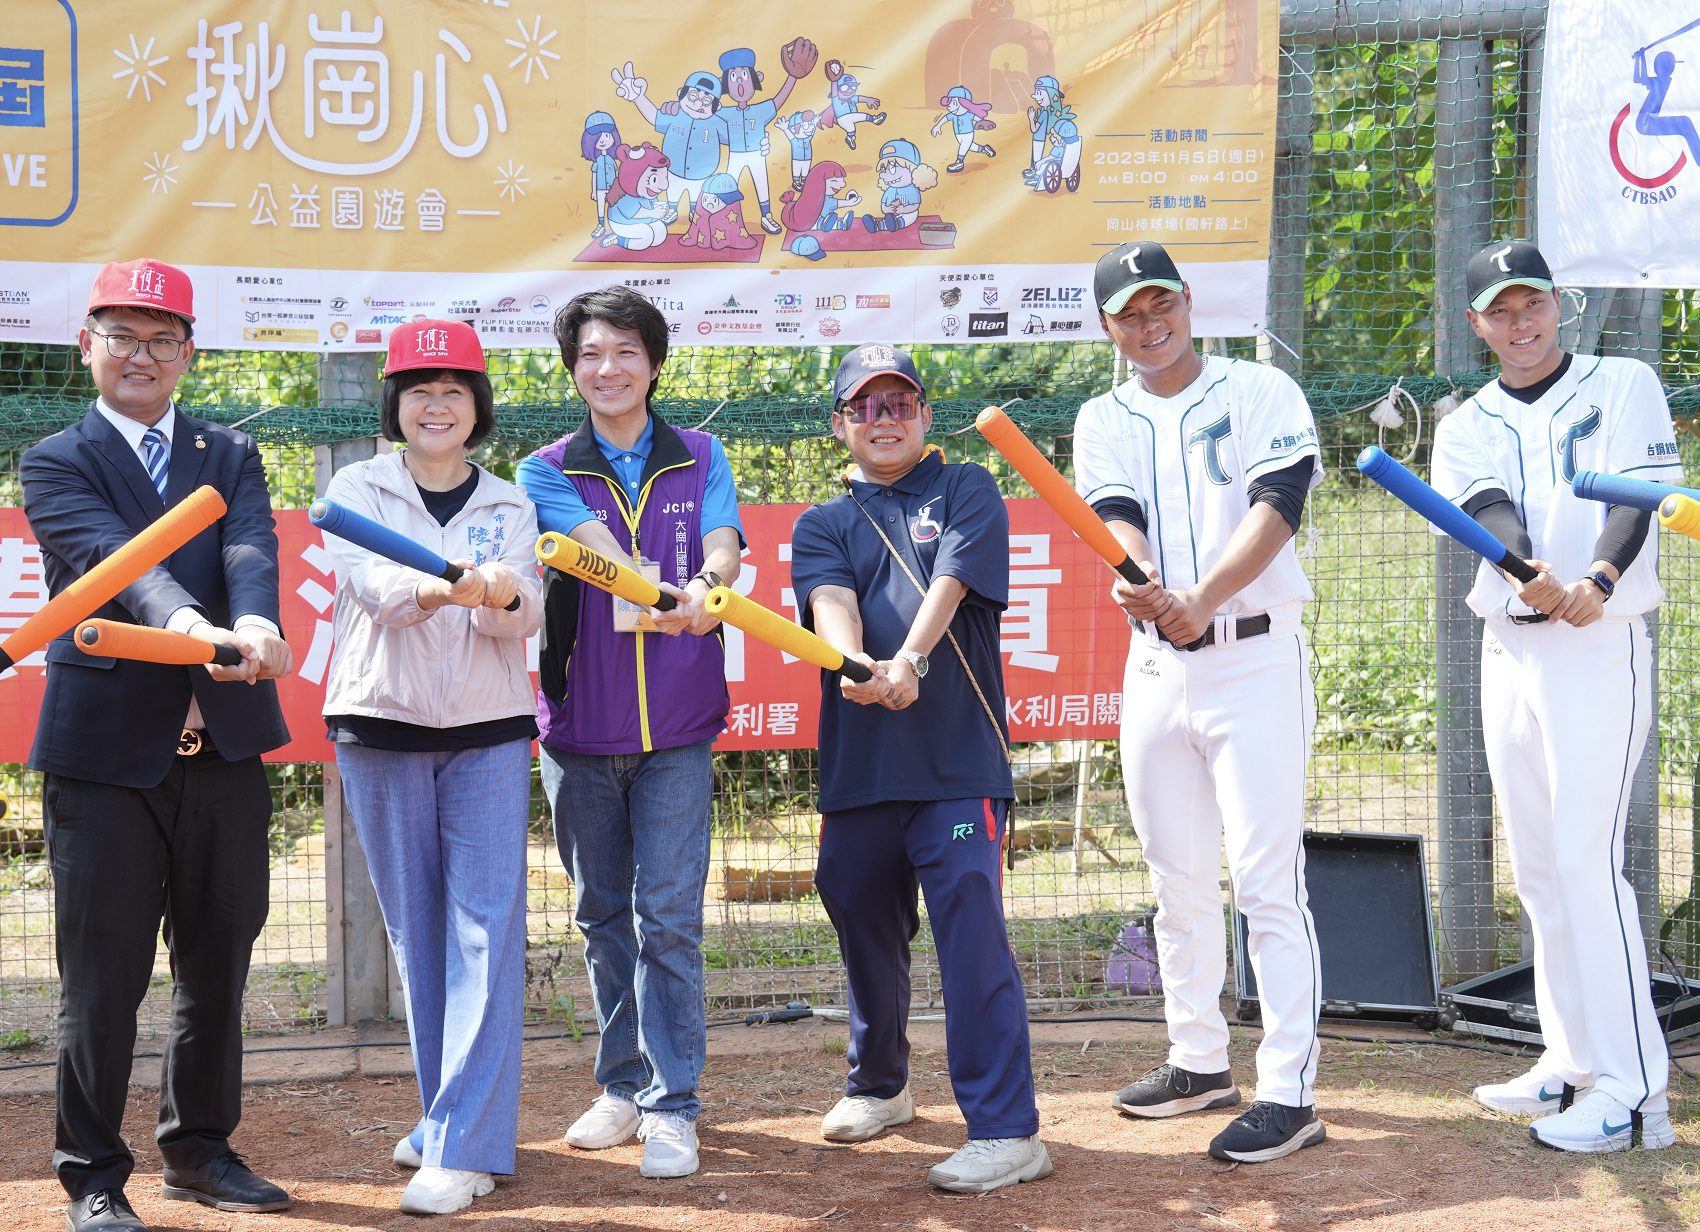 「天使盃」身障棒球賽暨公益園遊會 台鋼球星到場力挺 - 早安台灣新聞 | Morning Taiwan News